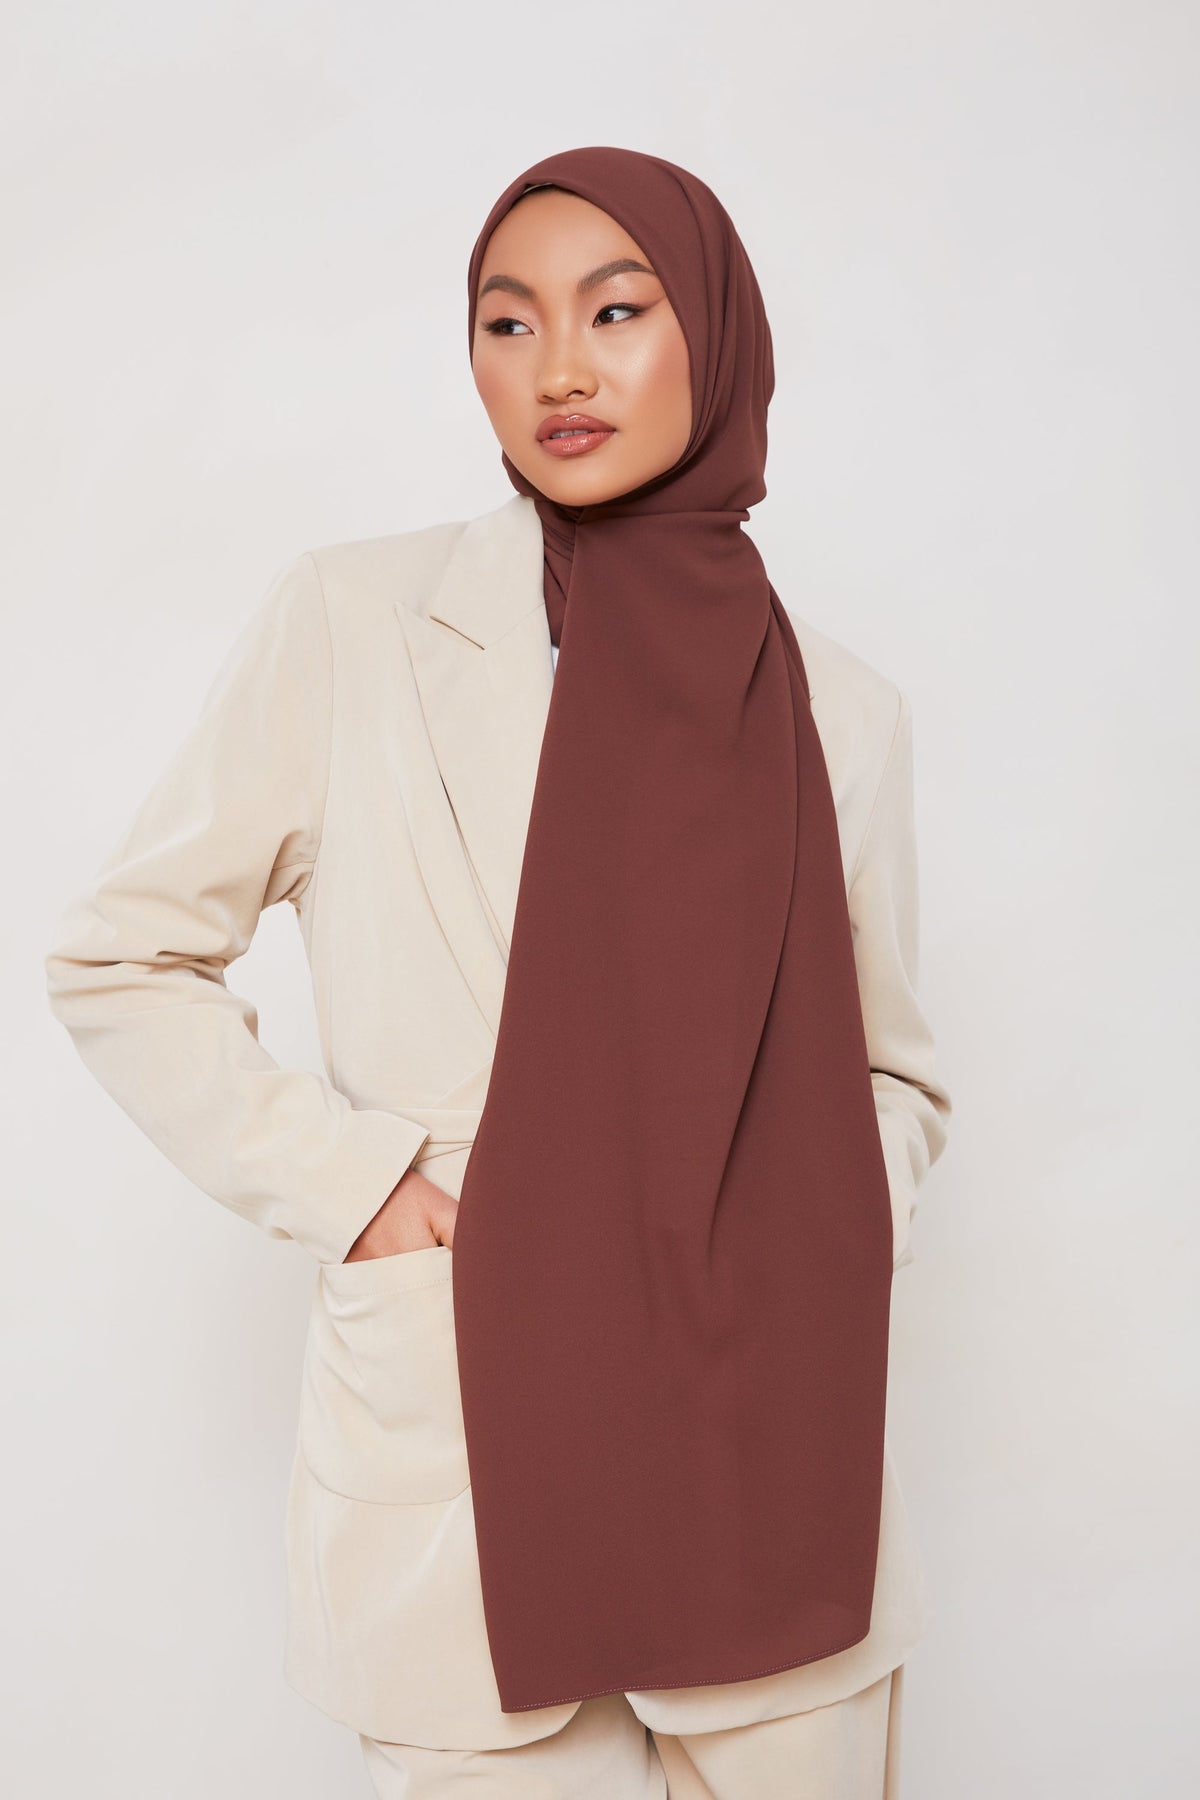 TEXTURE Classic Chiffon Hijab - Dark Oak epschoolboard 